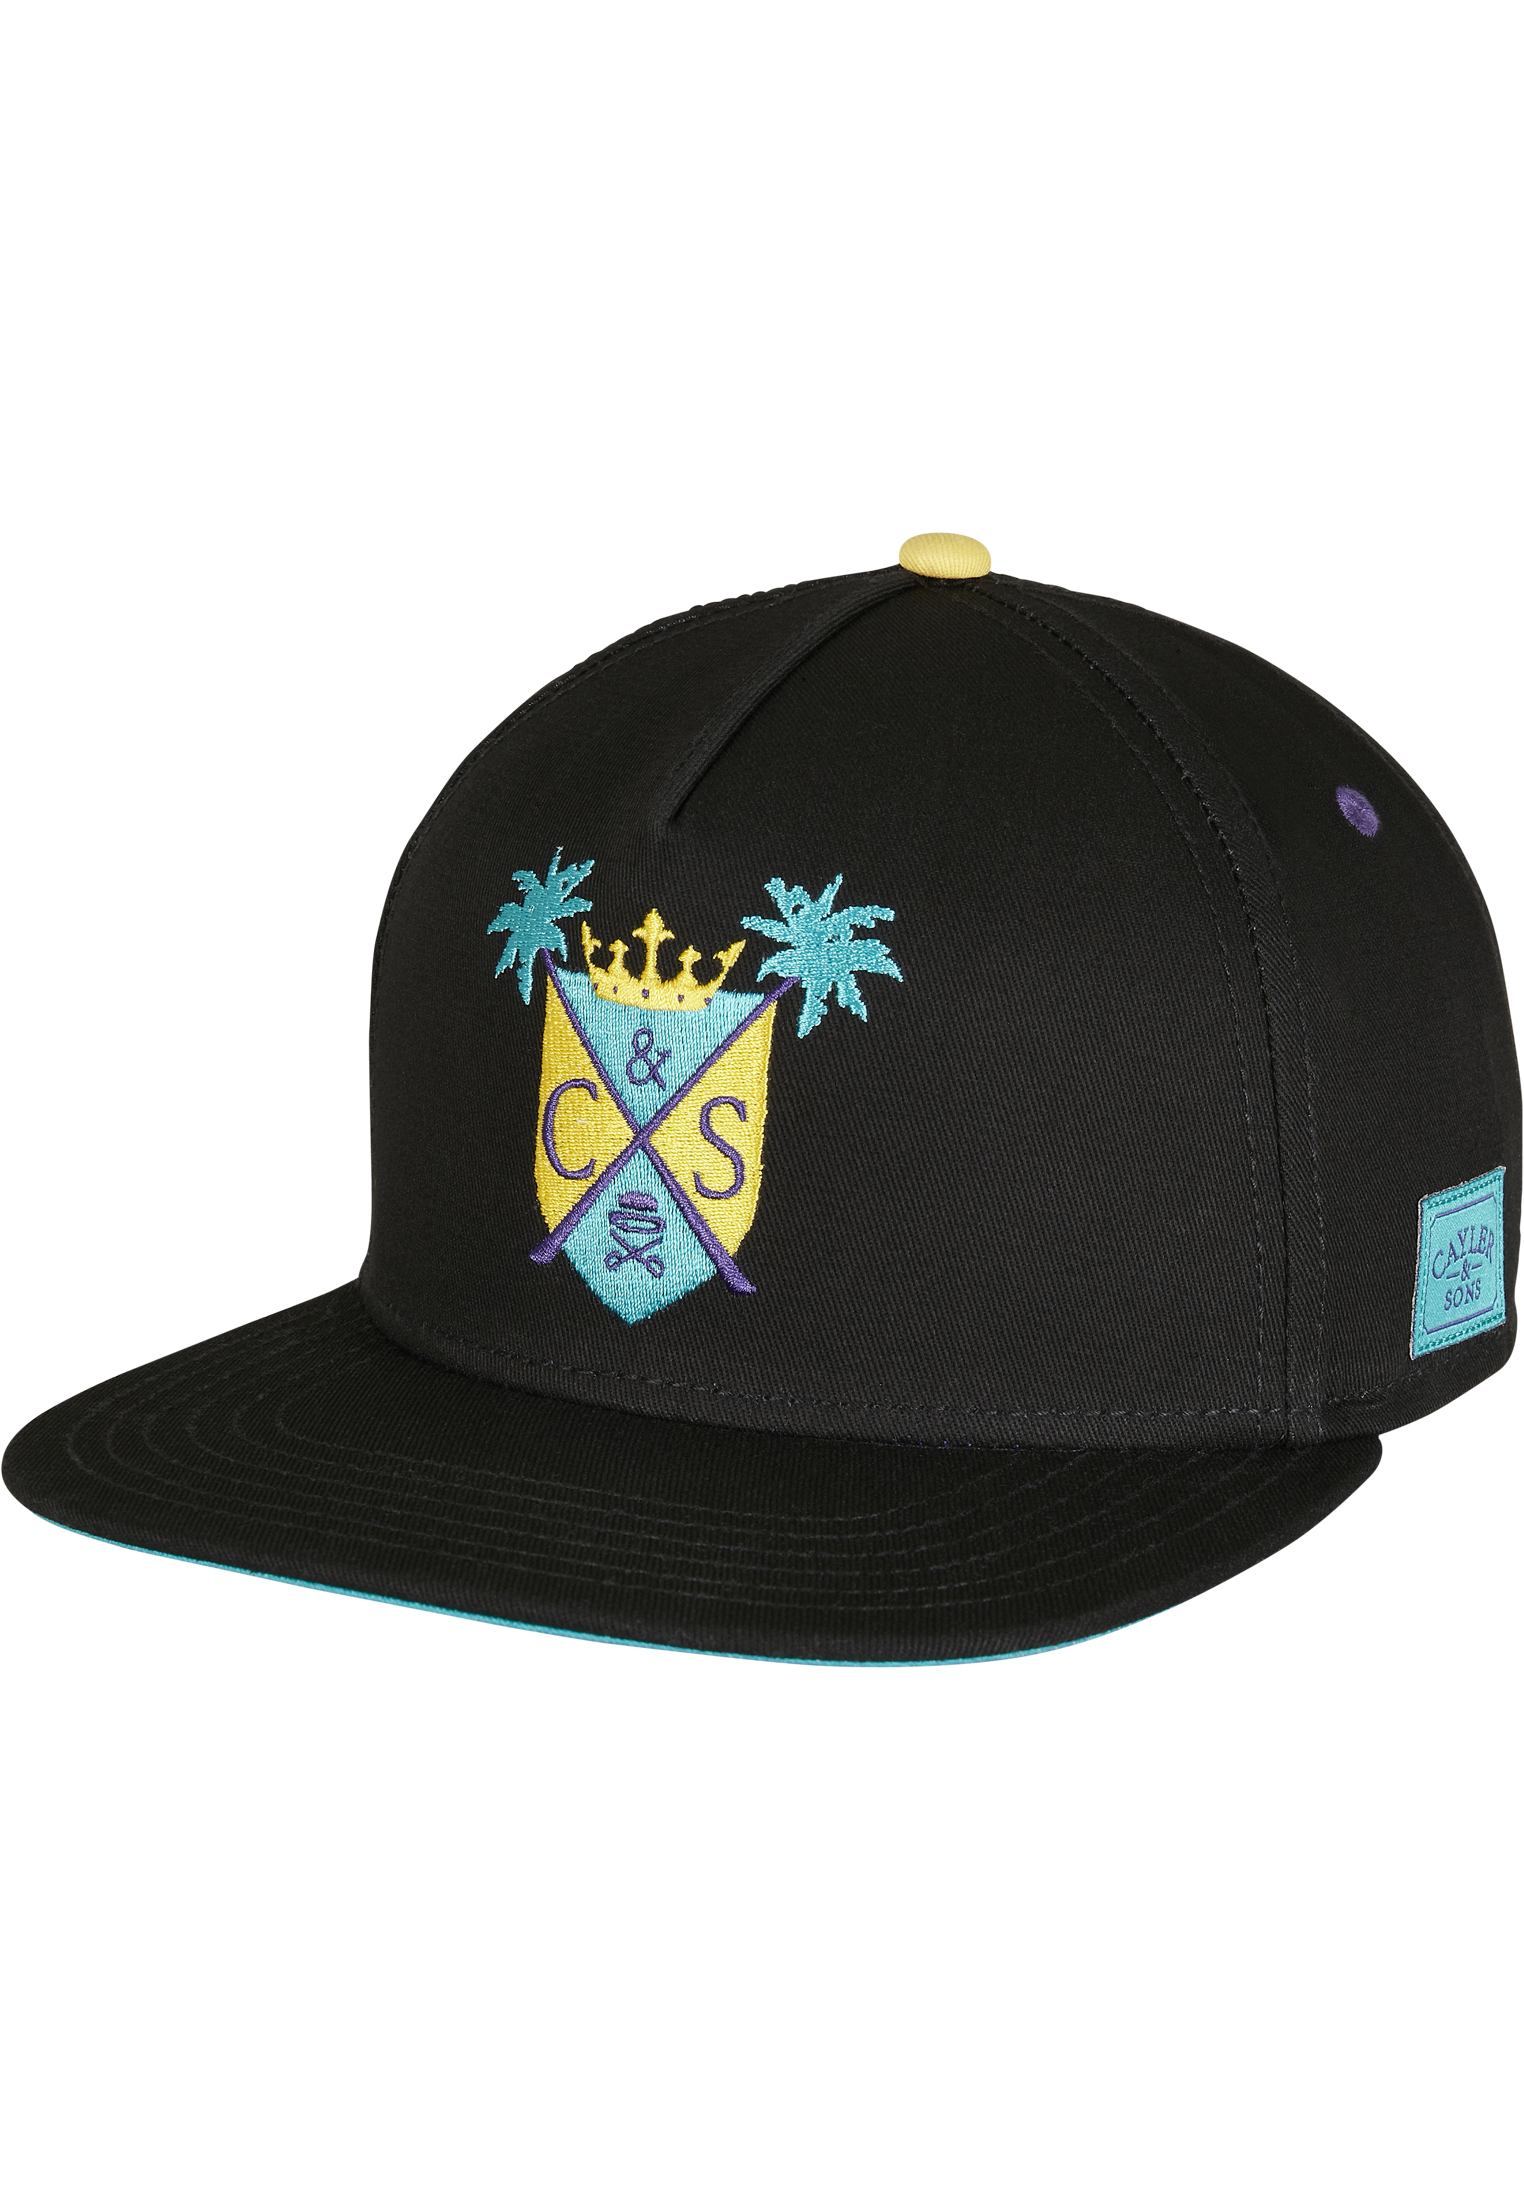 Caps C&S WL Miami Crest Snapback in Farbe black/mc